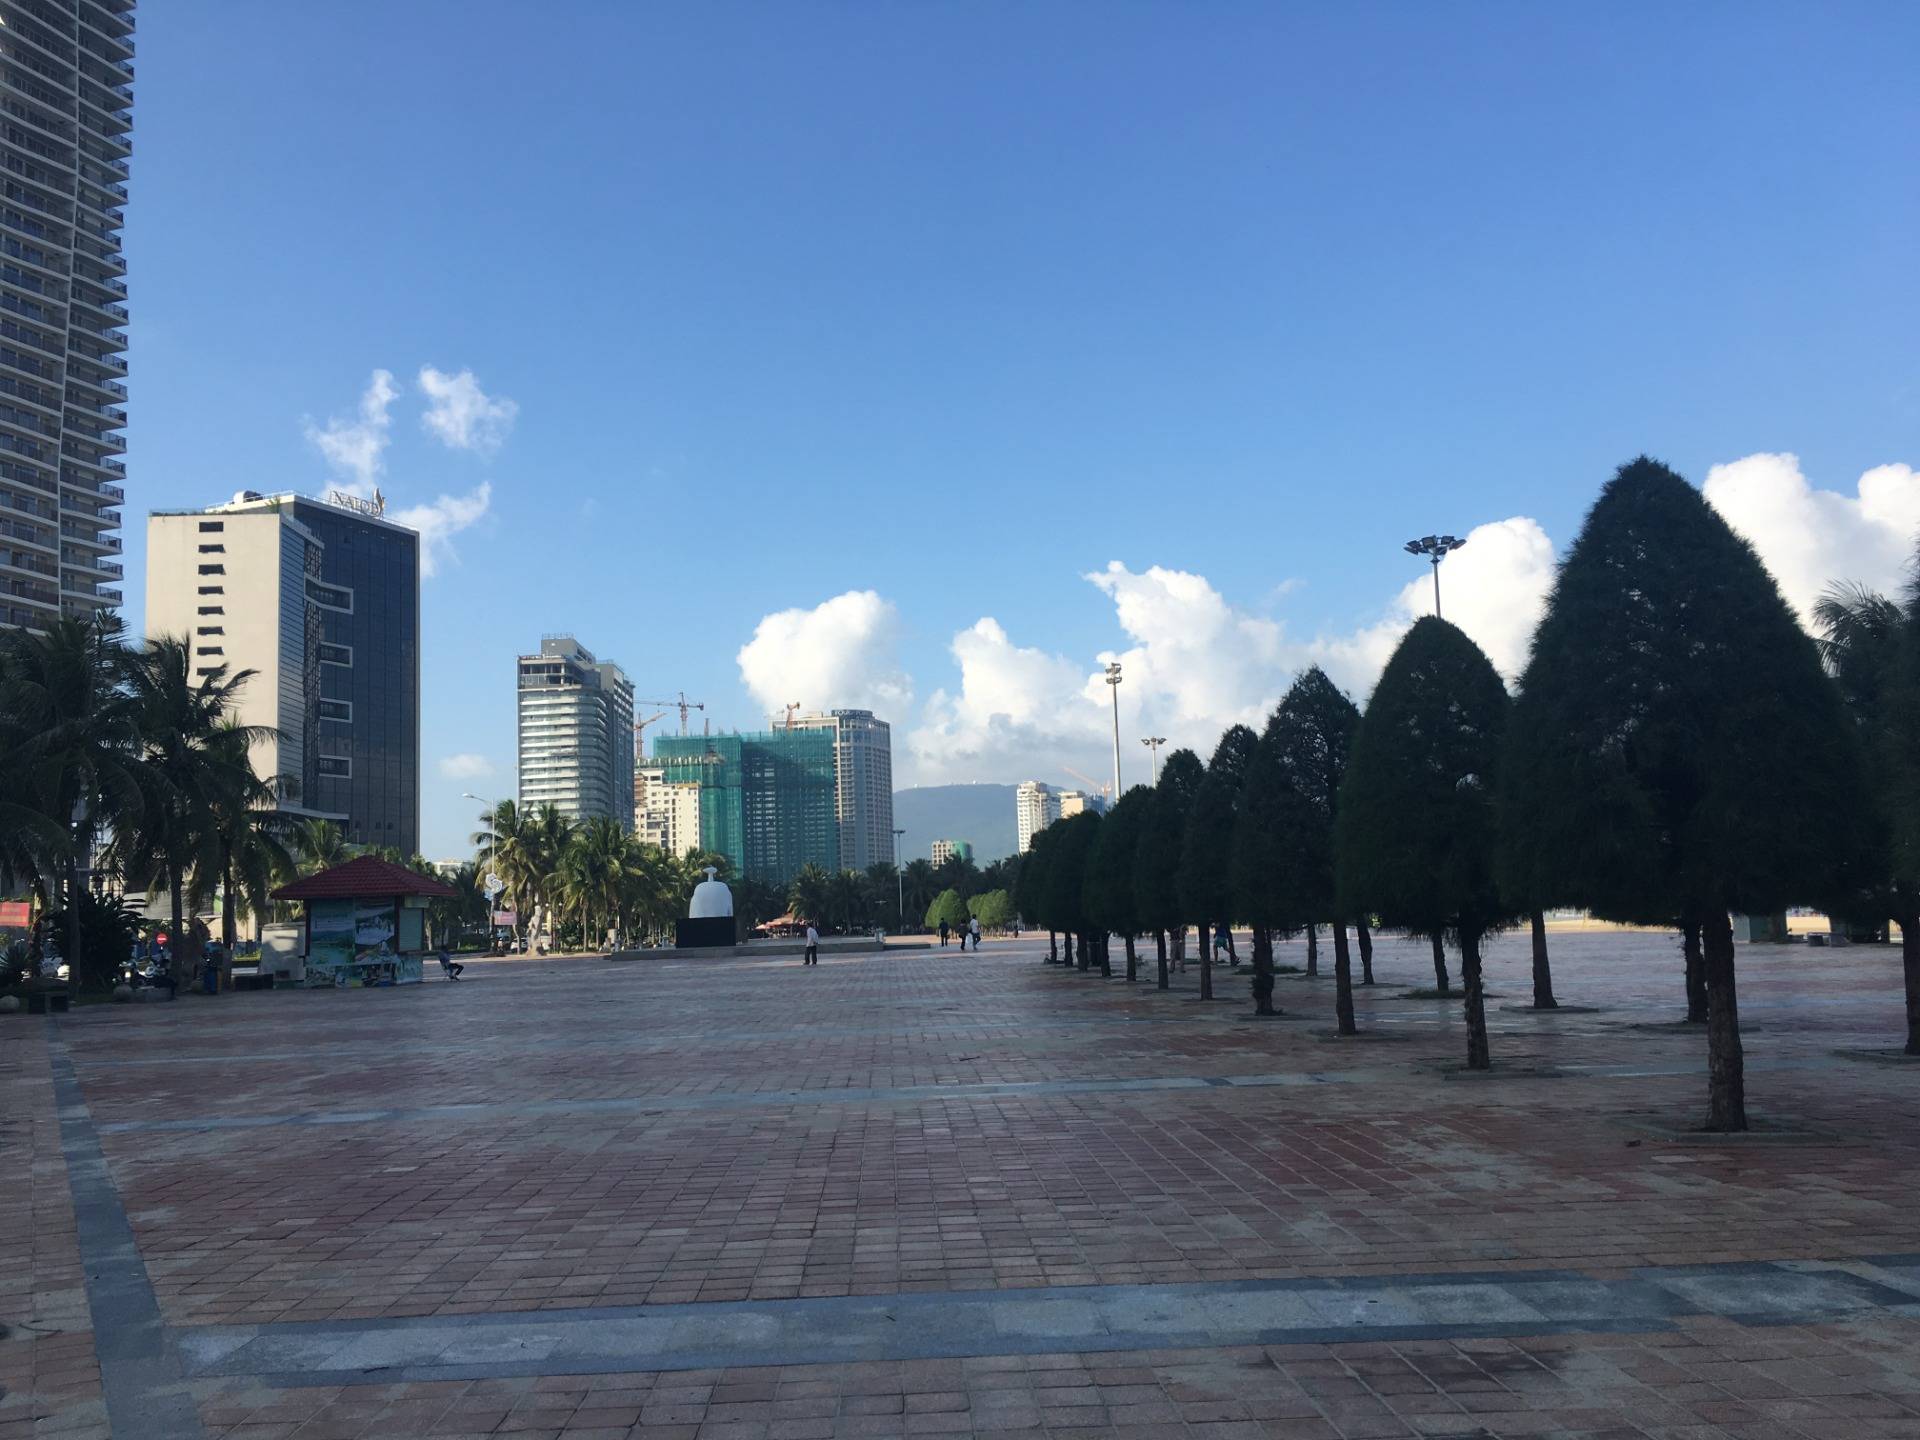 Da Nang is a growing city.